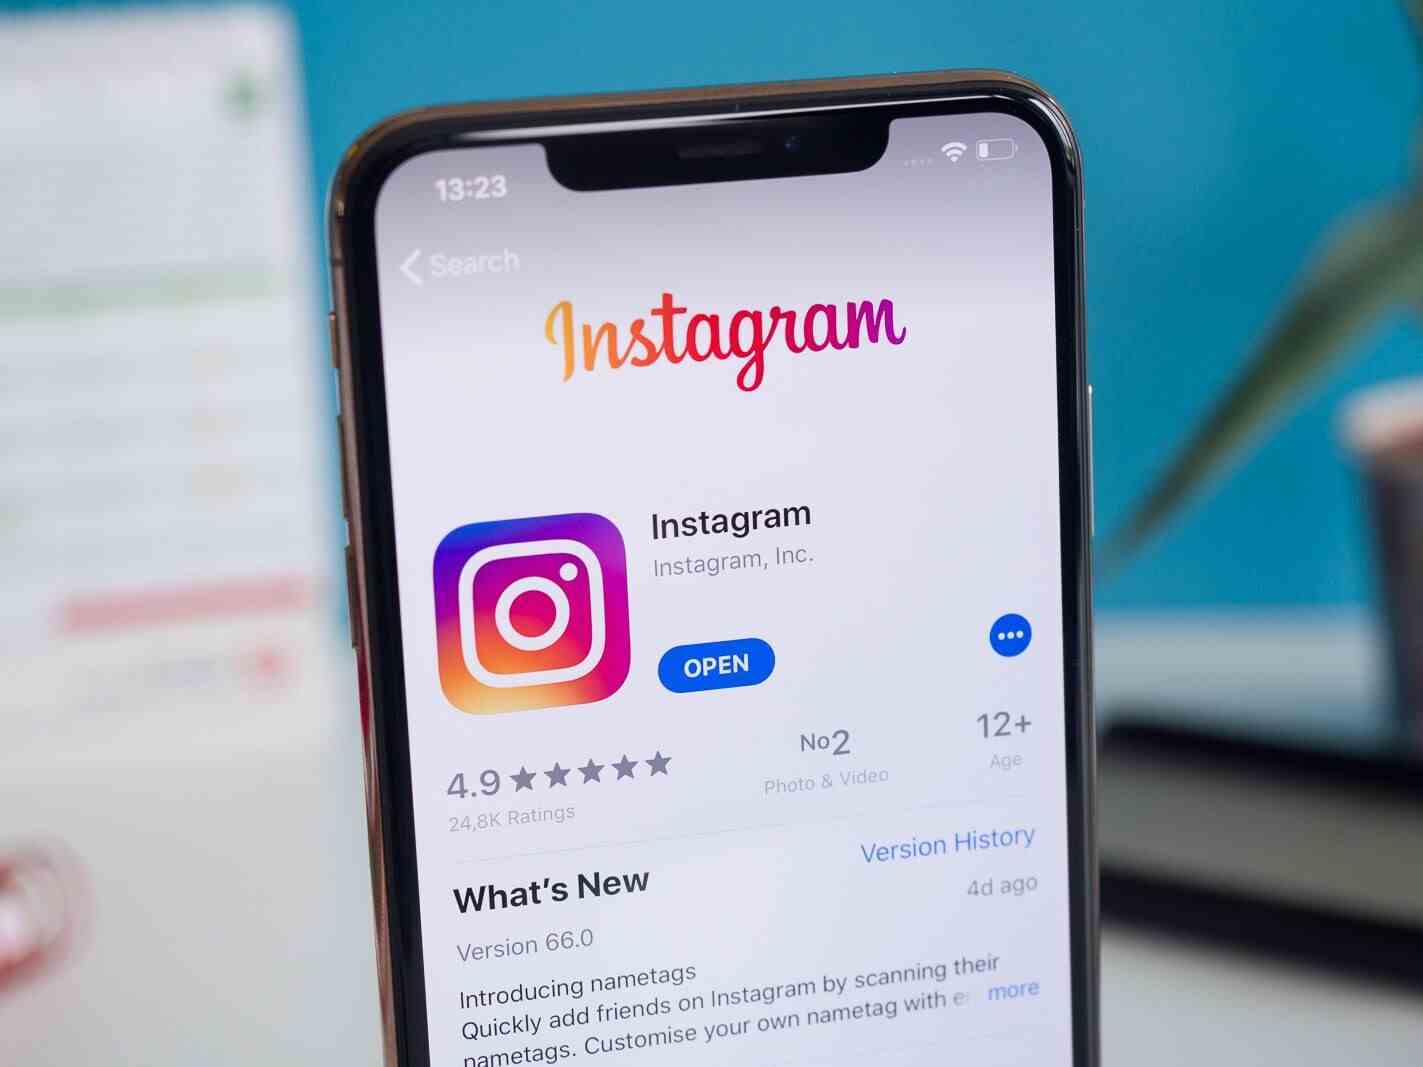 Instagram'ın popülaritesi, onu bunun gibi yasal suçlamalar için birincil hedef haline getirdi.  - Sosyal Medya devleri, ABD'li gençlerin akıl sağlığına verdiği zarar nedeniyle yasalar tarafından takip edilebilir.